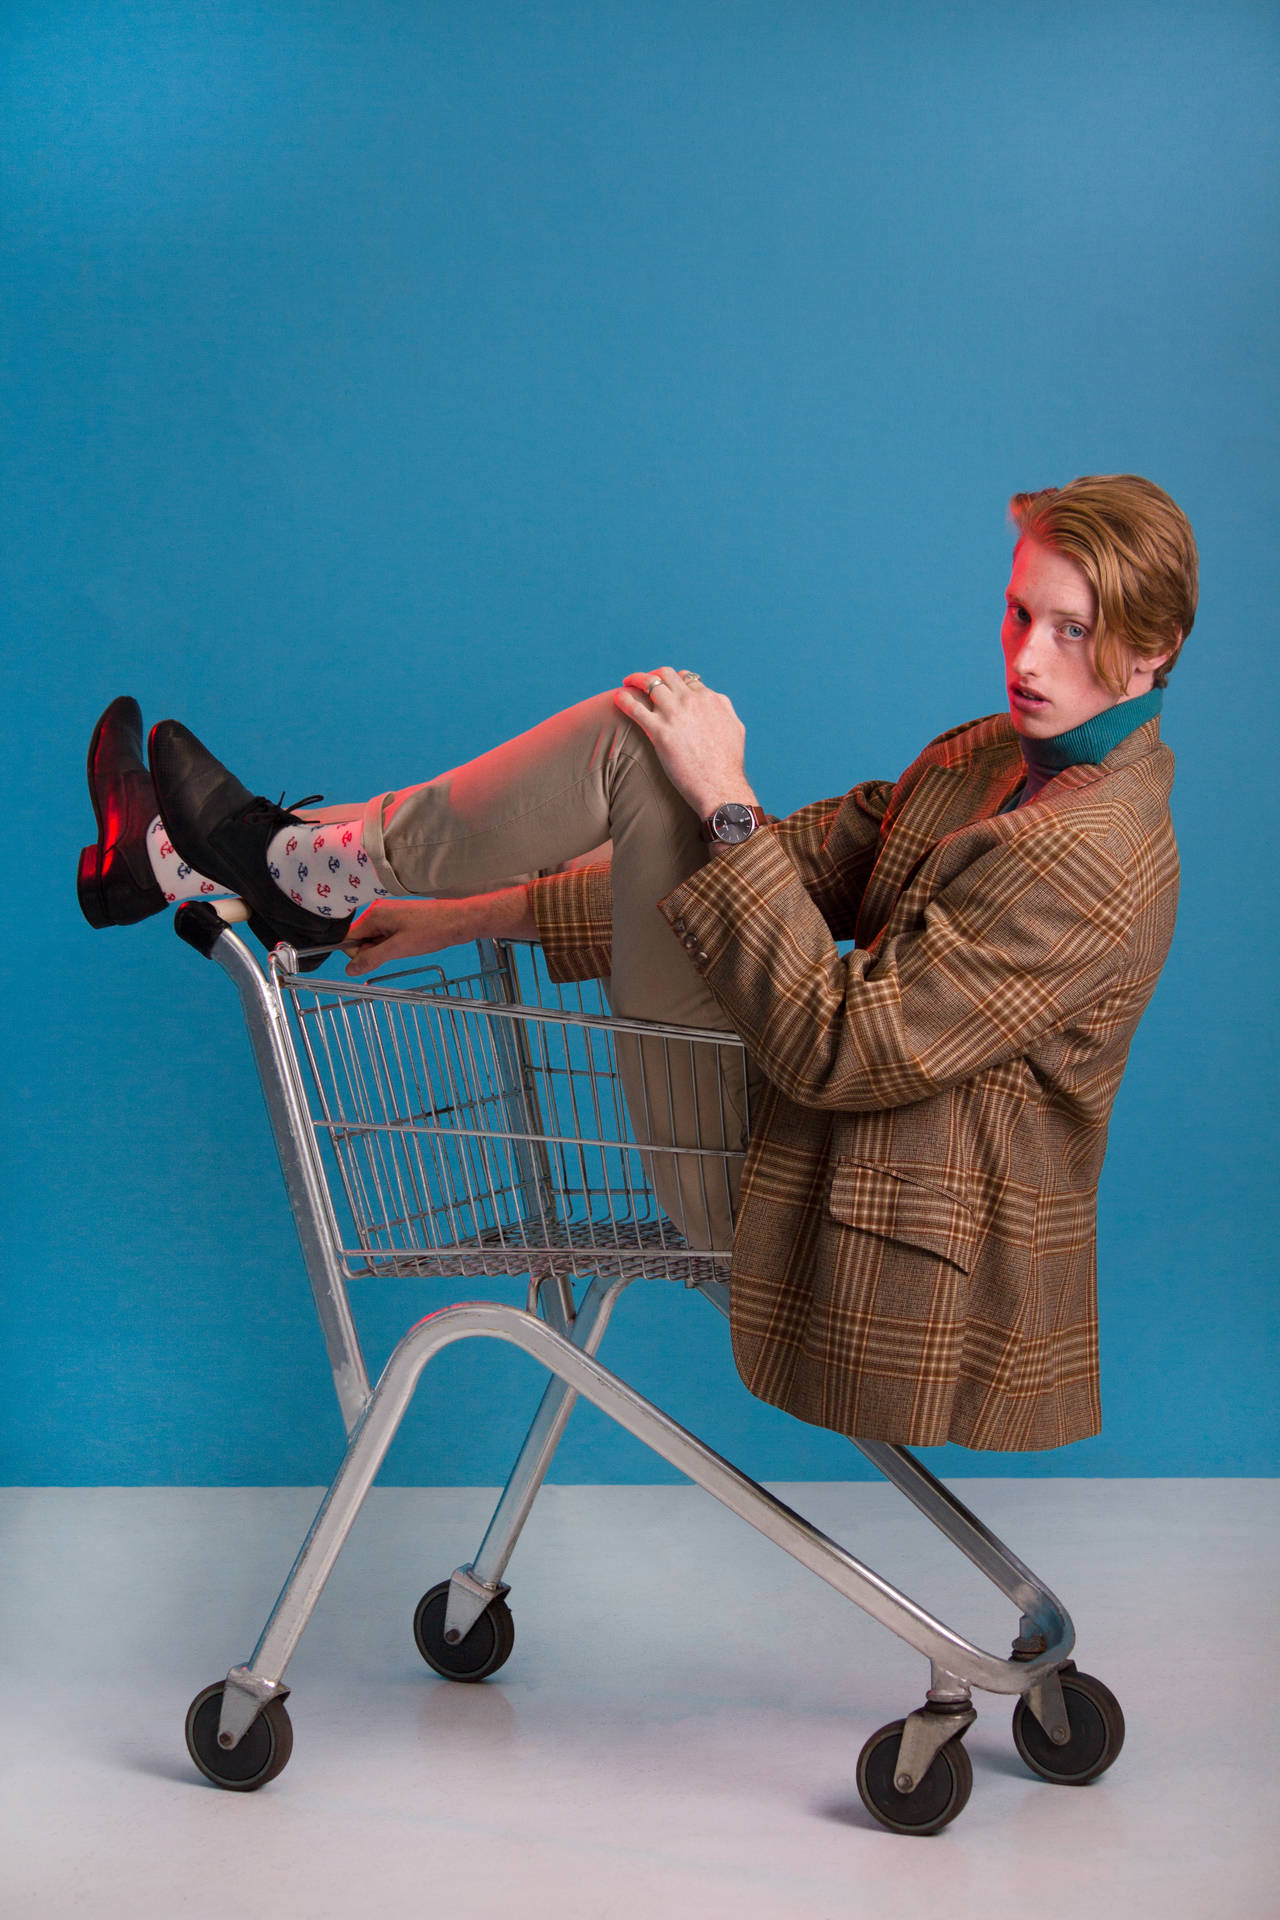 Attitude Boy Riding A Shopping Cart Wallpaper